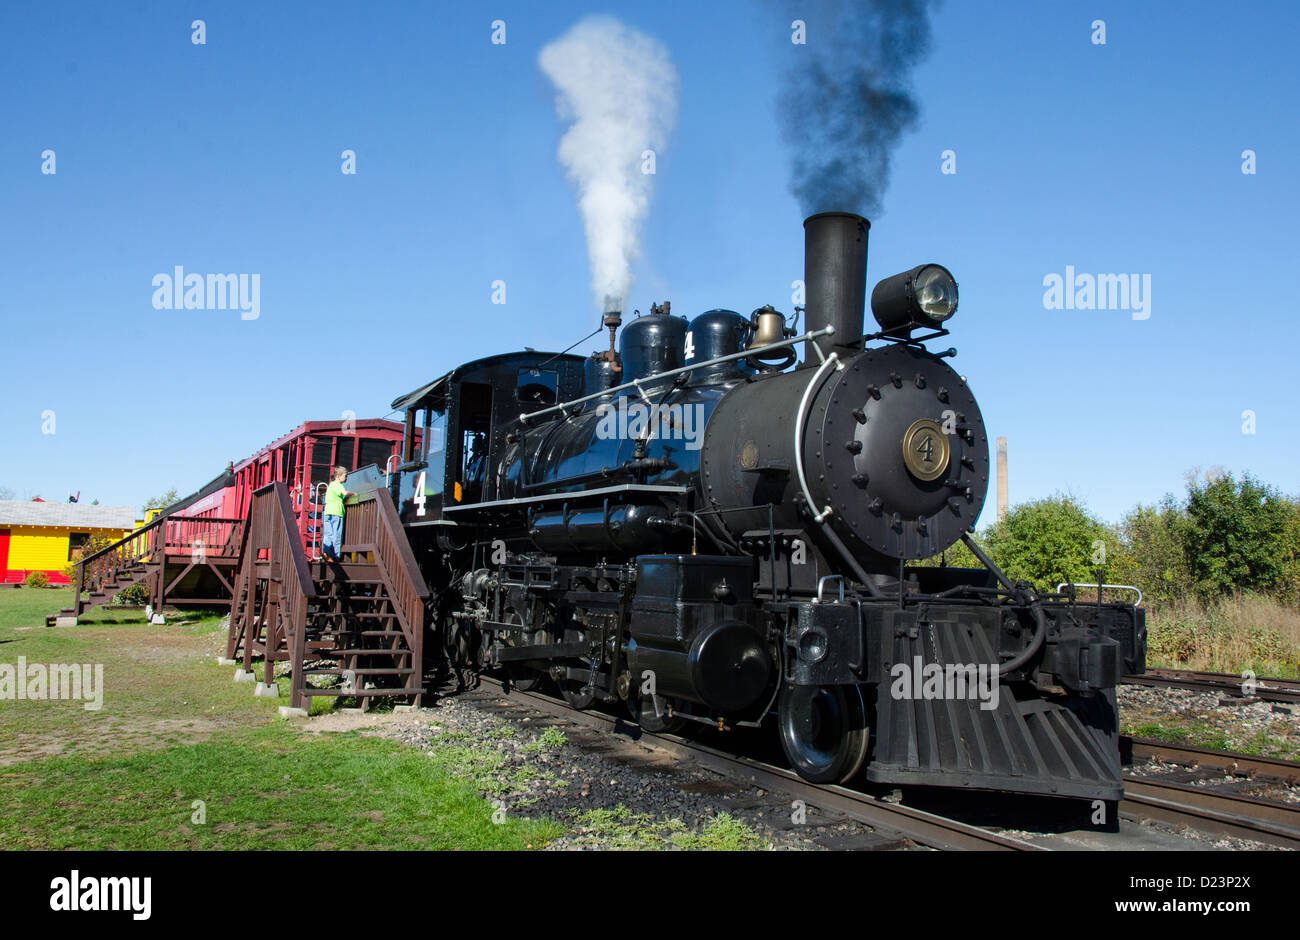 Le Train à vapeur dans la région de Laona bûcheron, Wisconsin, un train à vapeur d'époque qui transporte les visiteurs au Camp 5 Camp de bûcherons. Banque D'Images